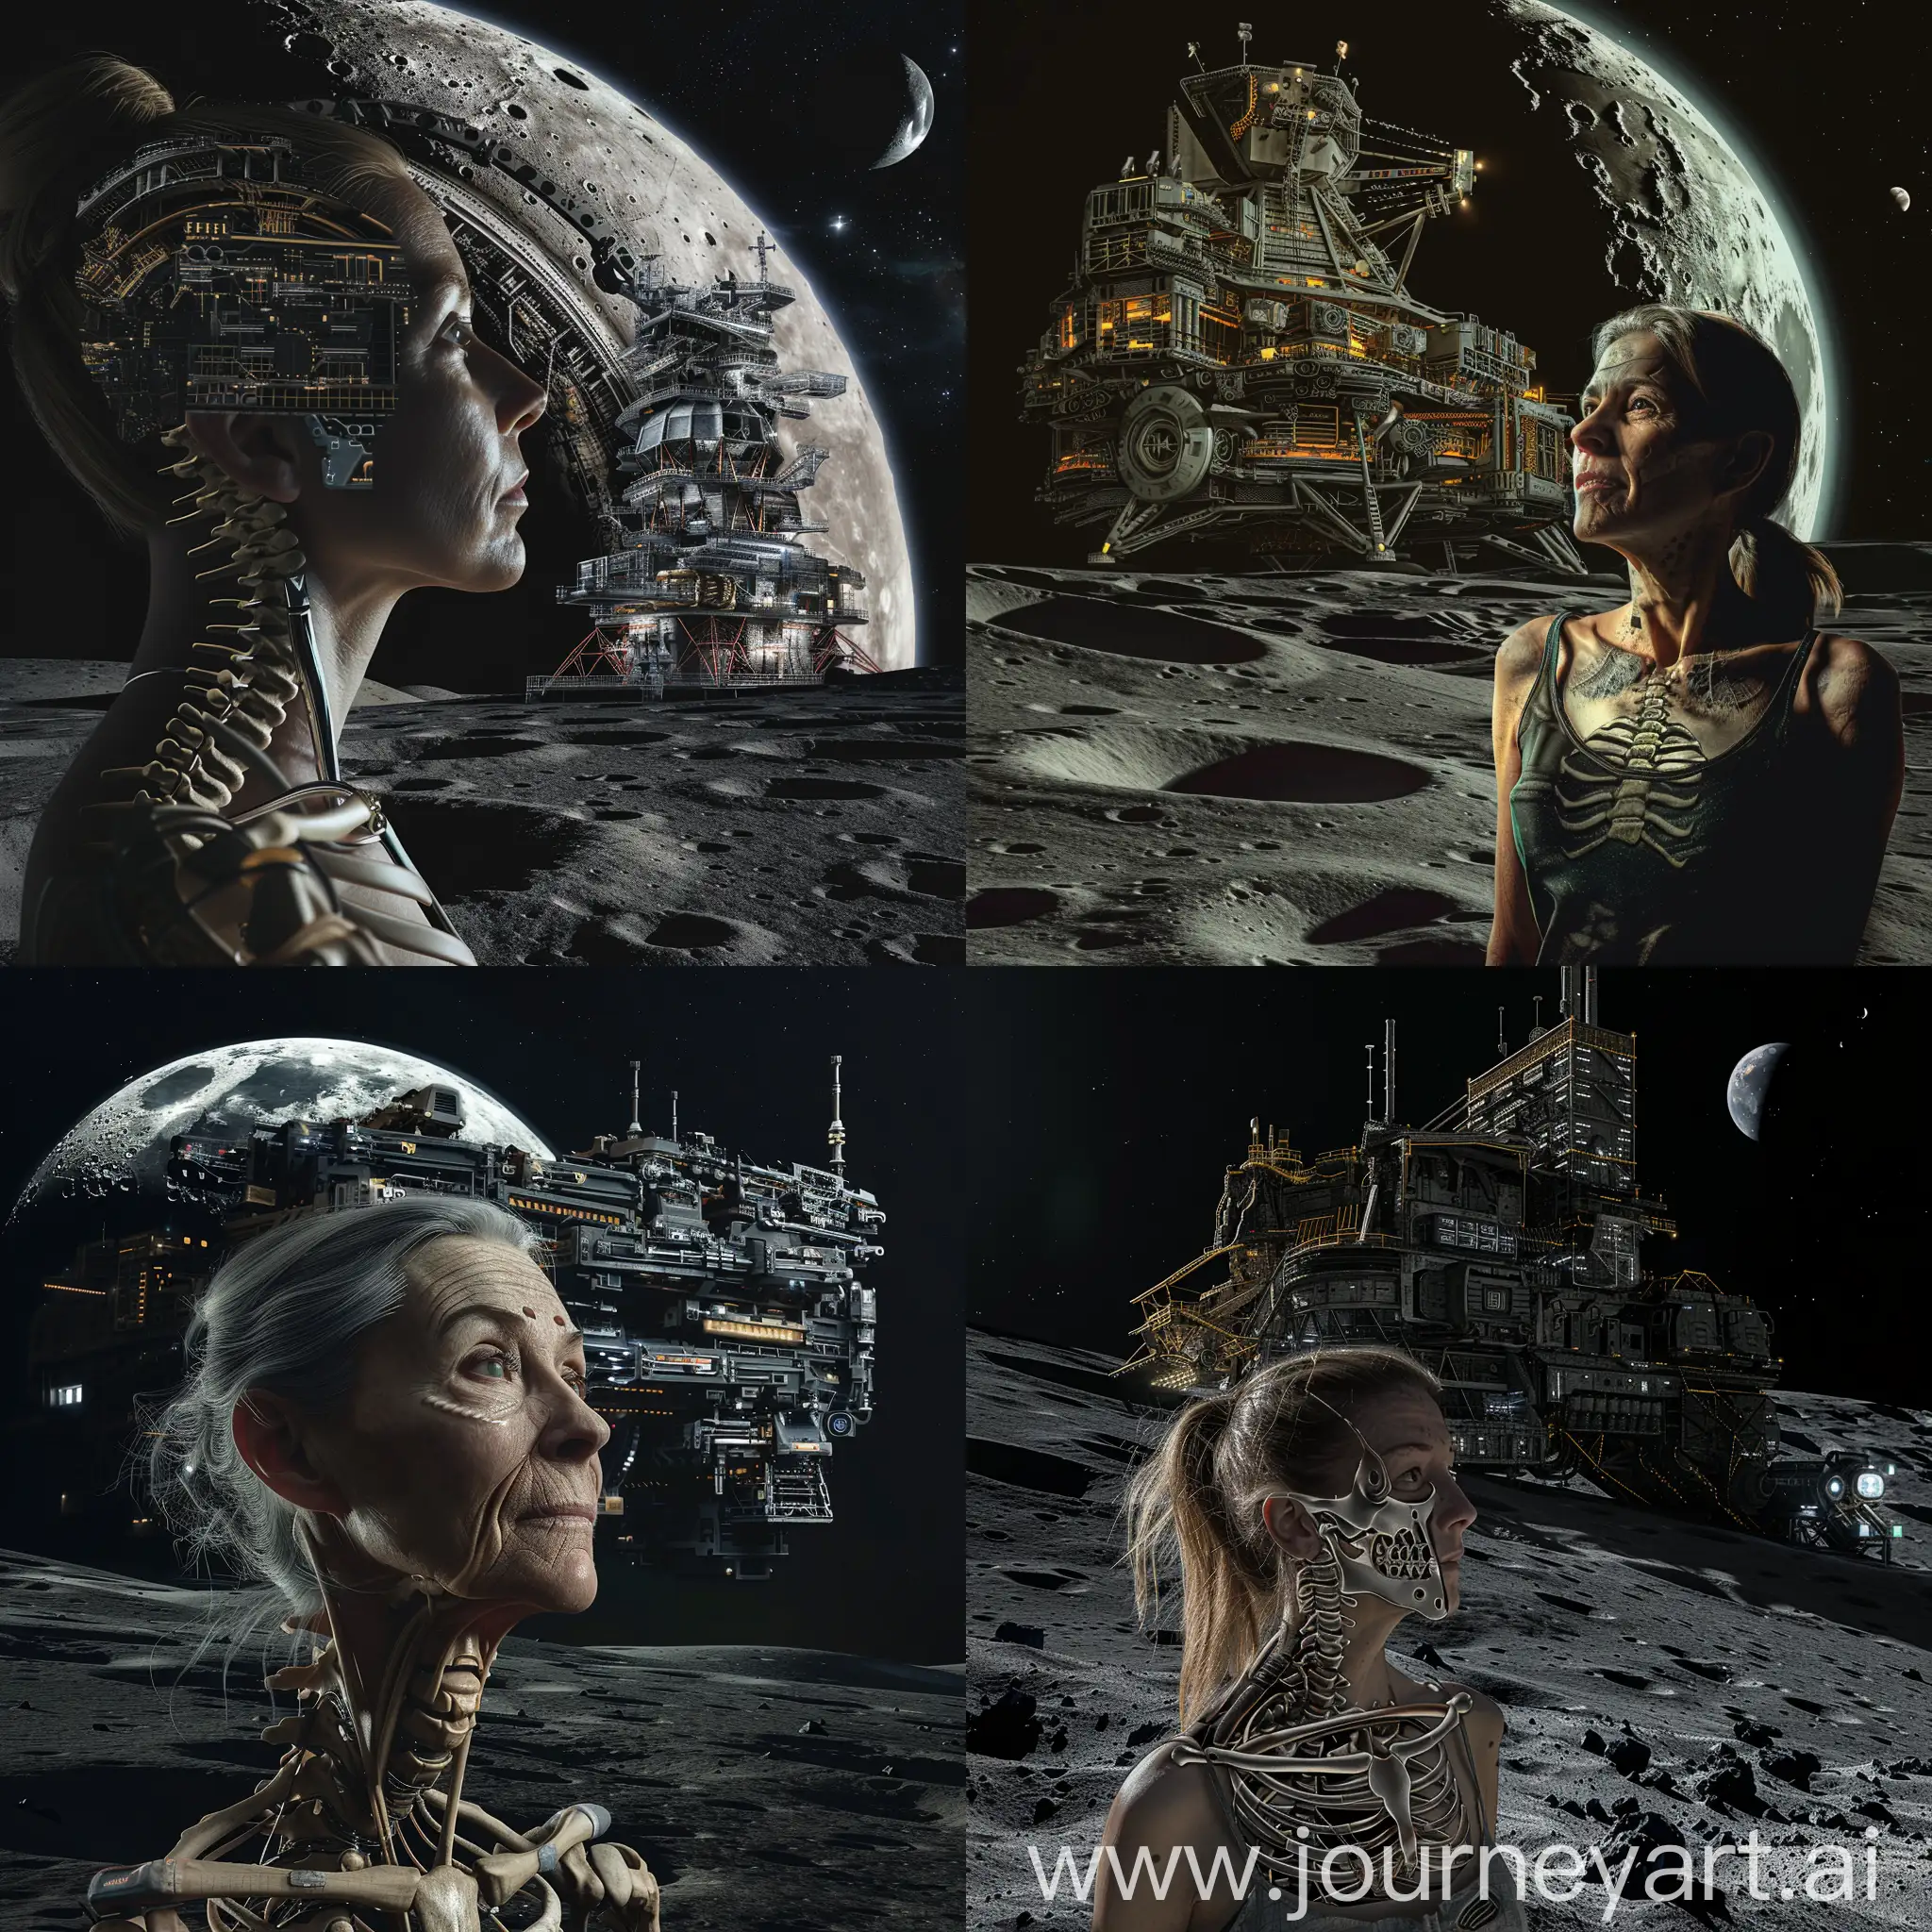 一个御姐，有部分可见的机械骨骼，背后有庞大的赛博朋克的空间站，地点是月球上，黑夜，很严峻的画风